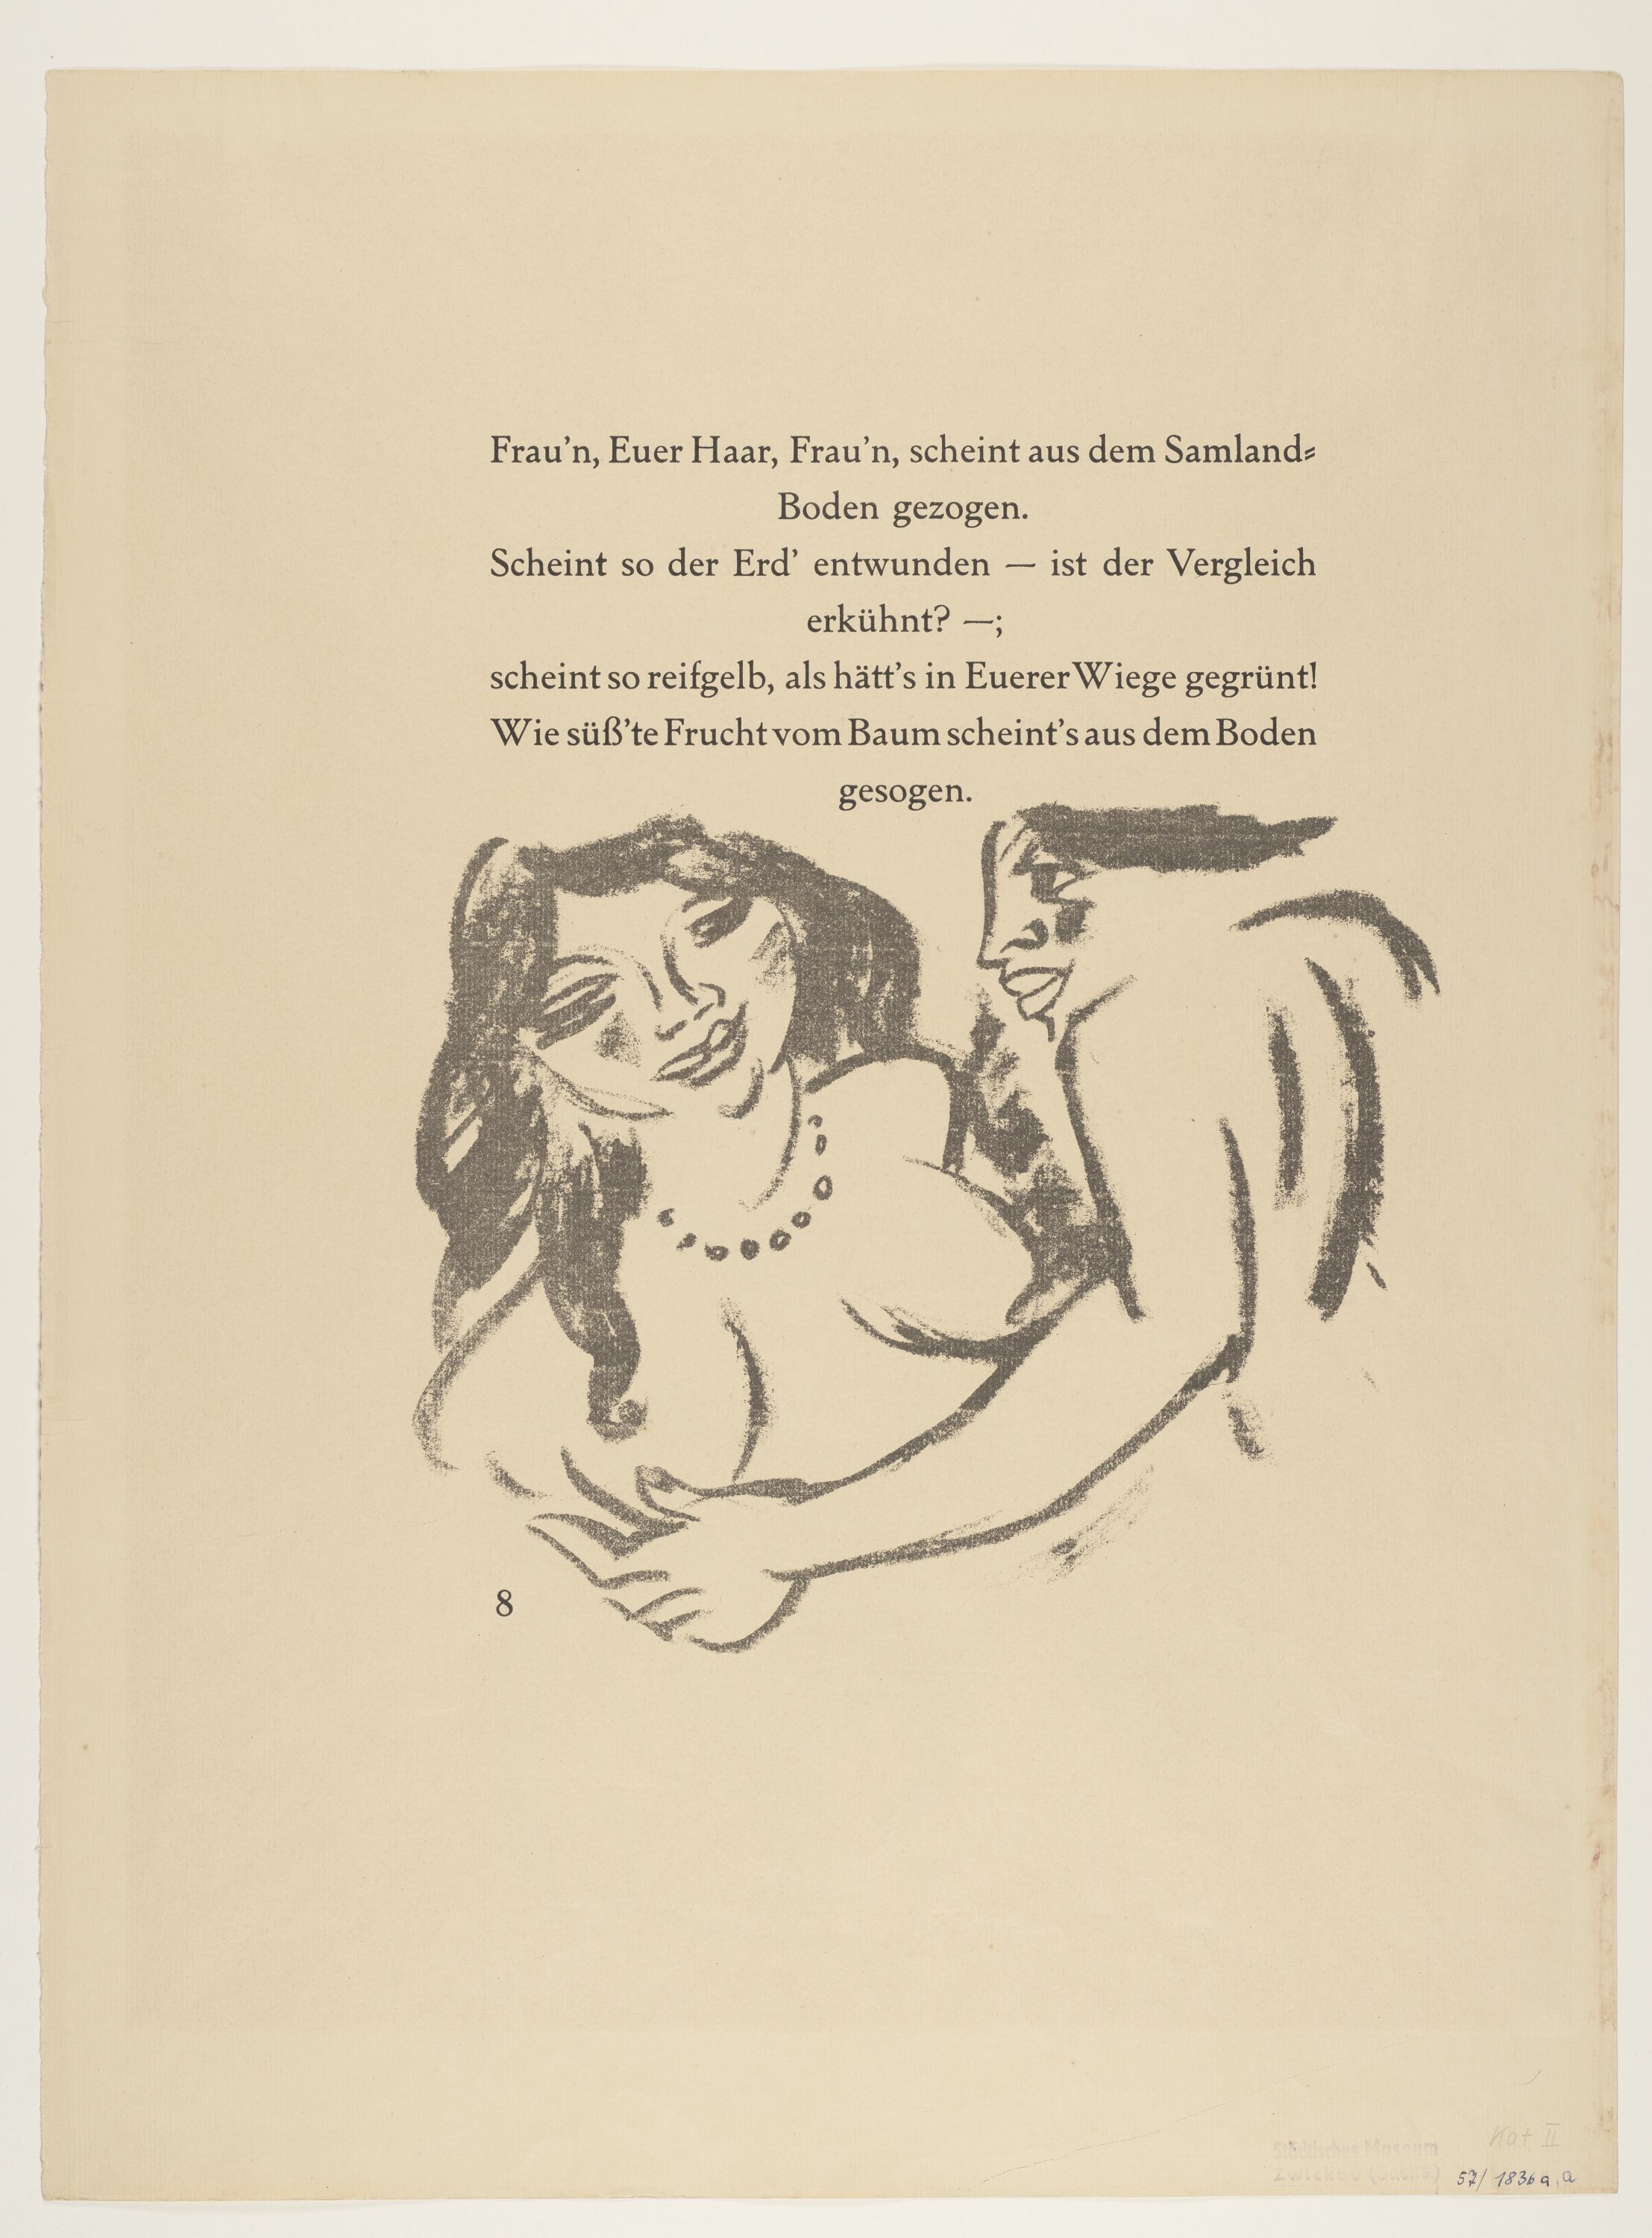 Zwei Frauen, aus: Heinrich Lautensack: Paraphrasen zur Samländischen Ode, 21 Lithografien, Seite 8 (© Pechstein - Hamburg / Tökendorf, 2021 | VG Bild-Kunst, Bonn 2021 RR-F)